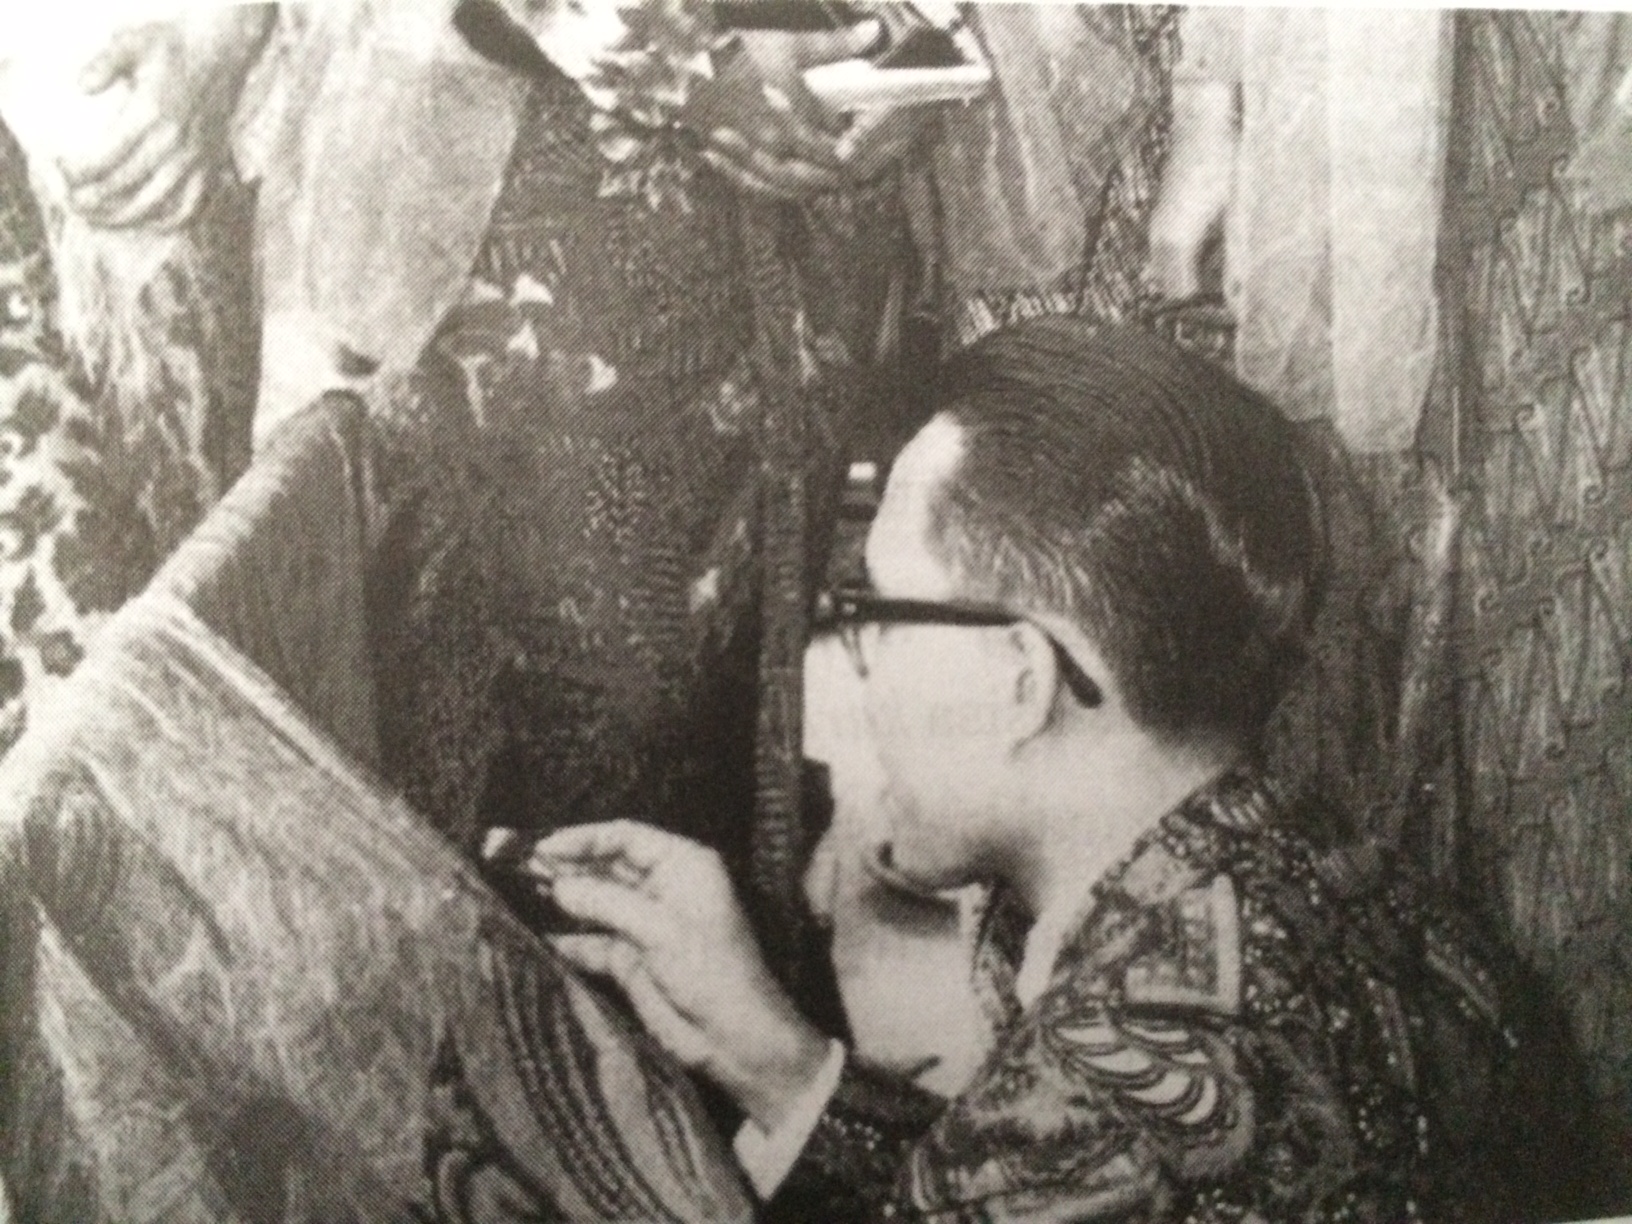 Bulan pecah di tubuh Go Tik Swan, asal muasal Batik Indonesia (2)